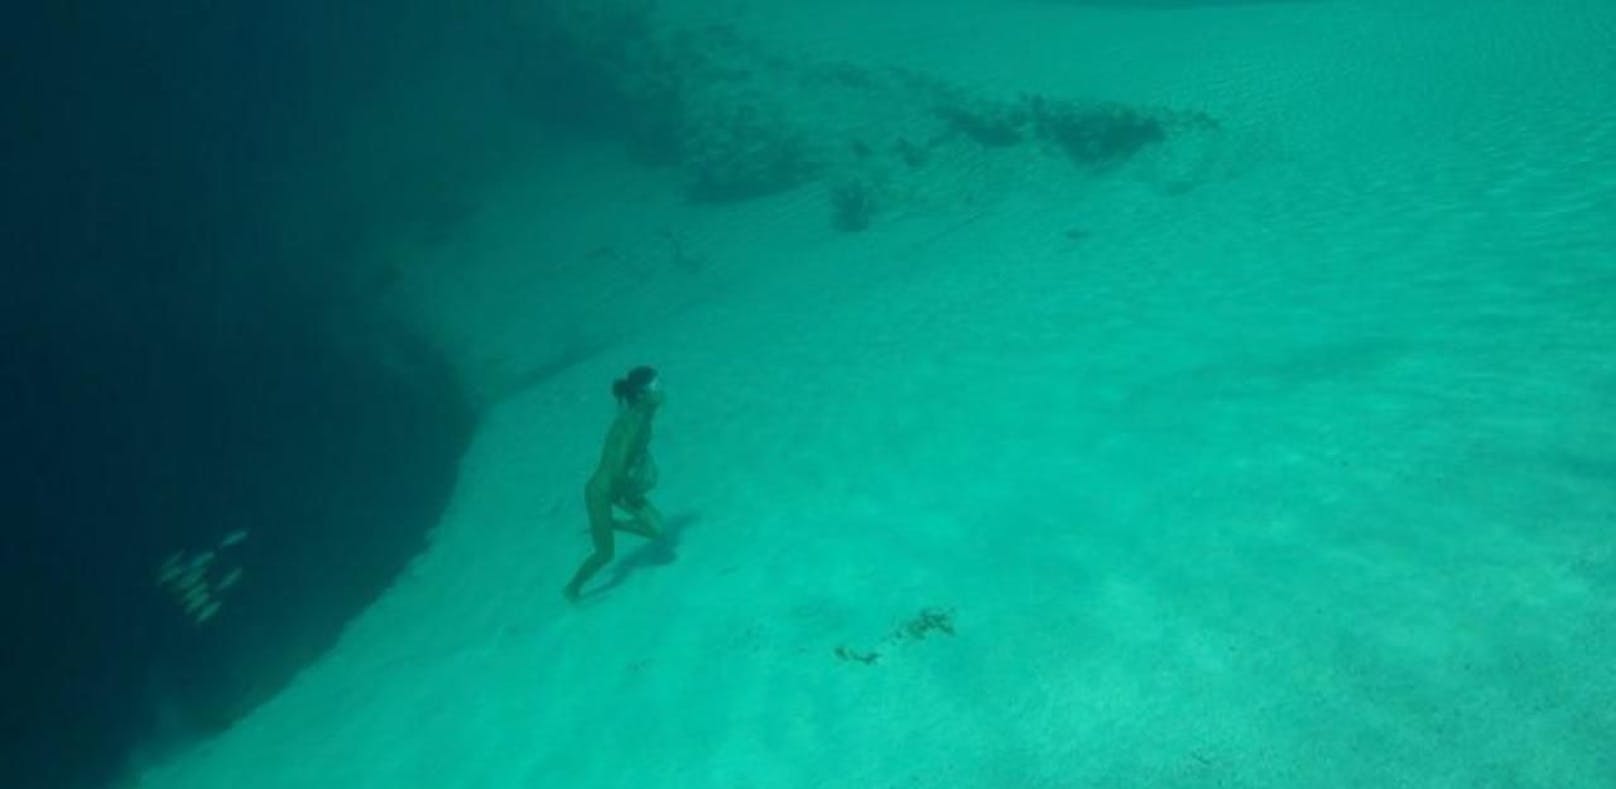 Taucherin klettert unter Wasser auf einen Abhang